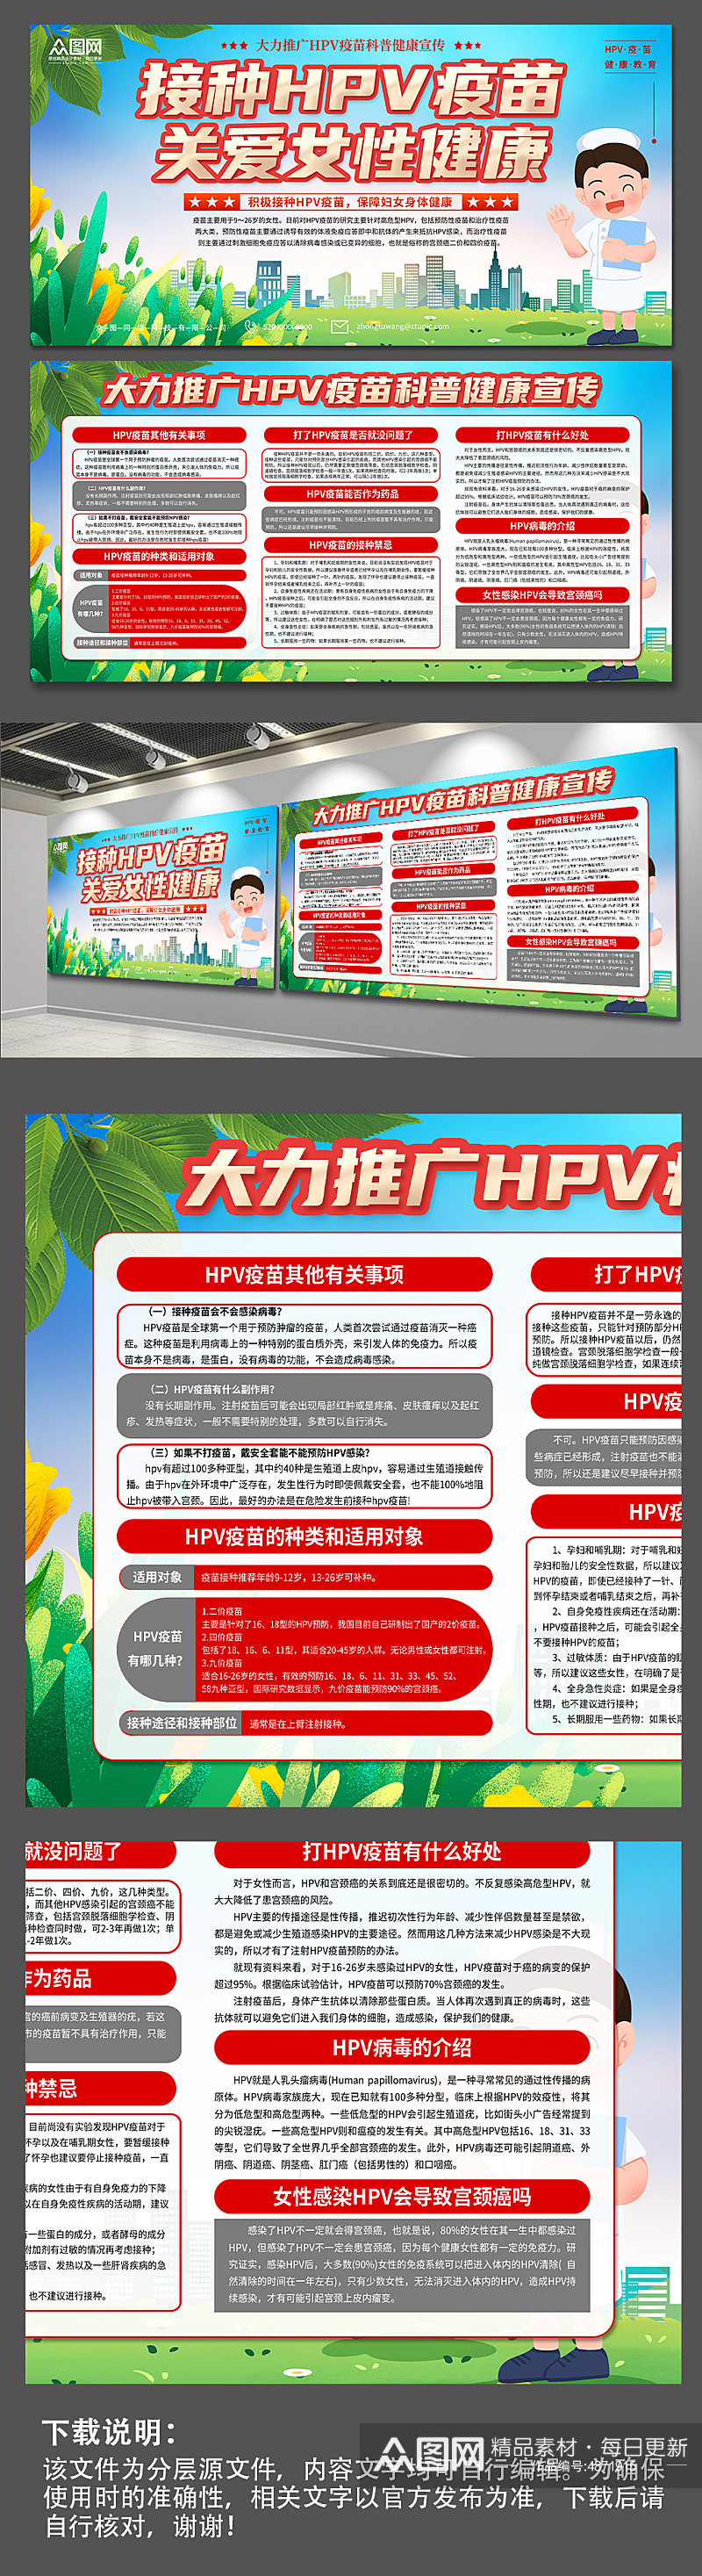 hpv疫苗接种知识宣传展板素材